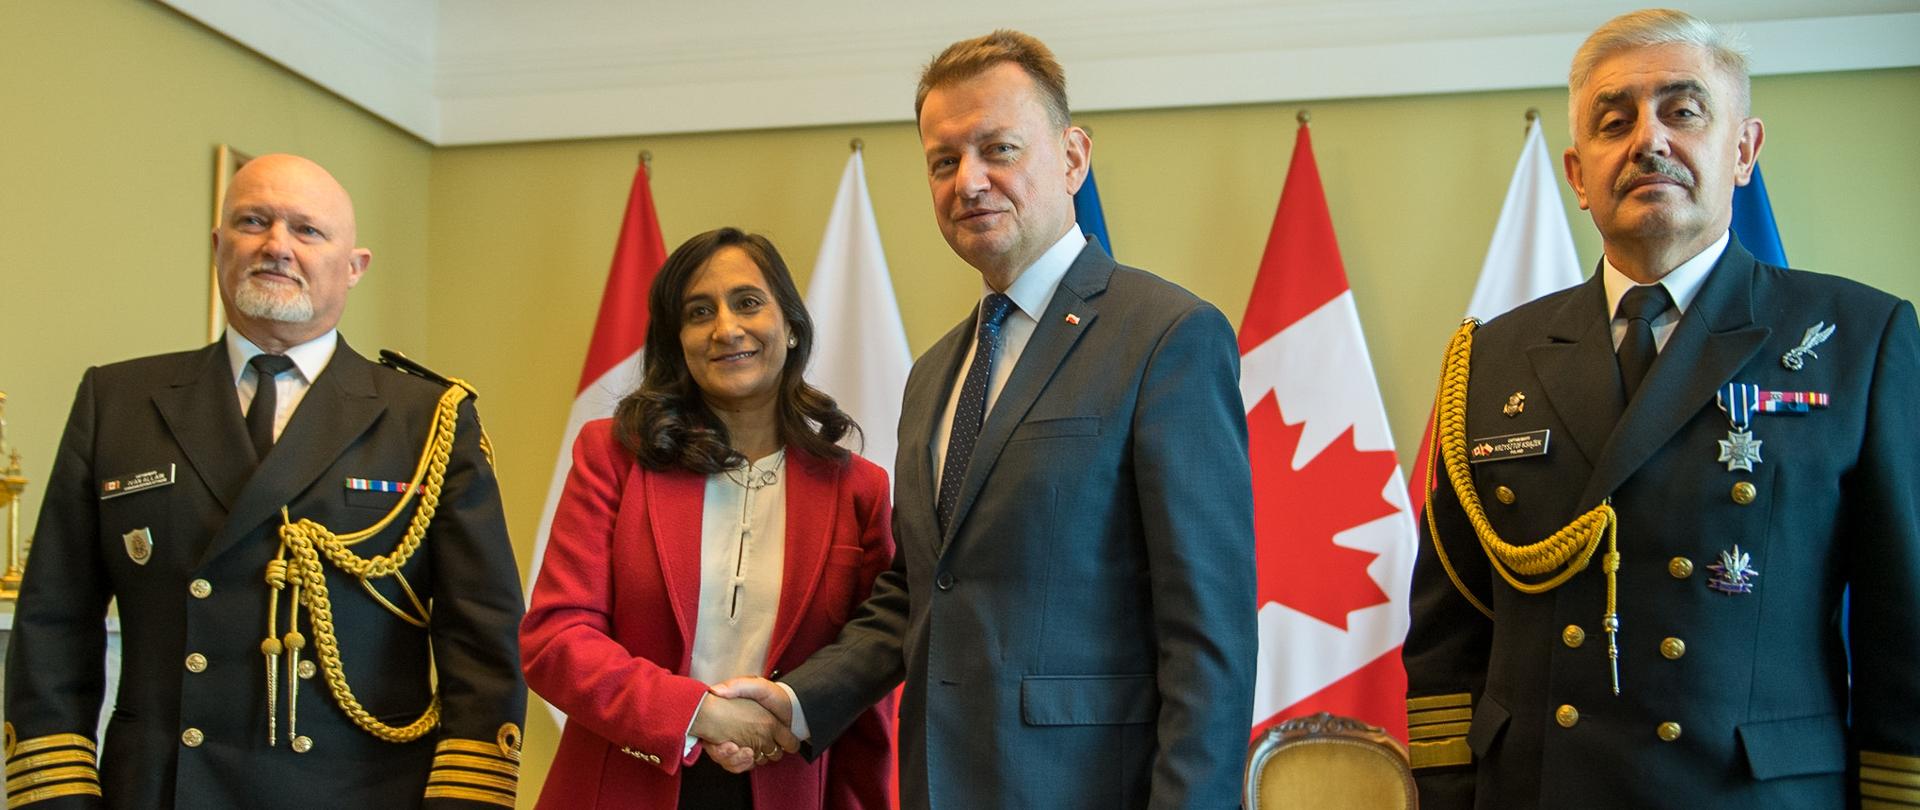 11 października br. w Warszawie, Mariusz Błaszczak, wicepremier, minister obrony narodowej, spotkał się z Anitą Anand, minister obrony Kanady.
